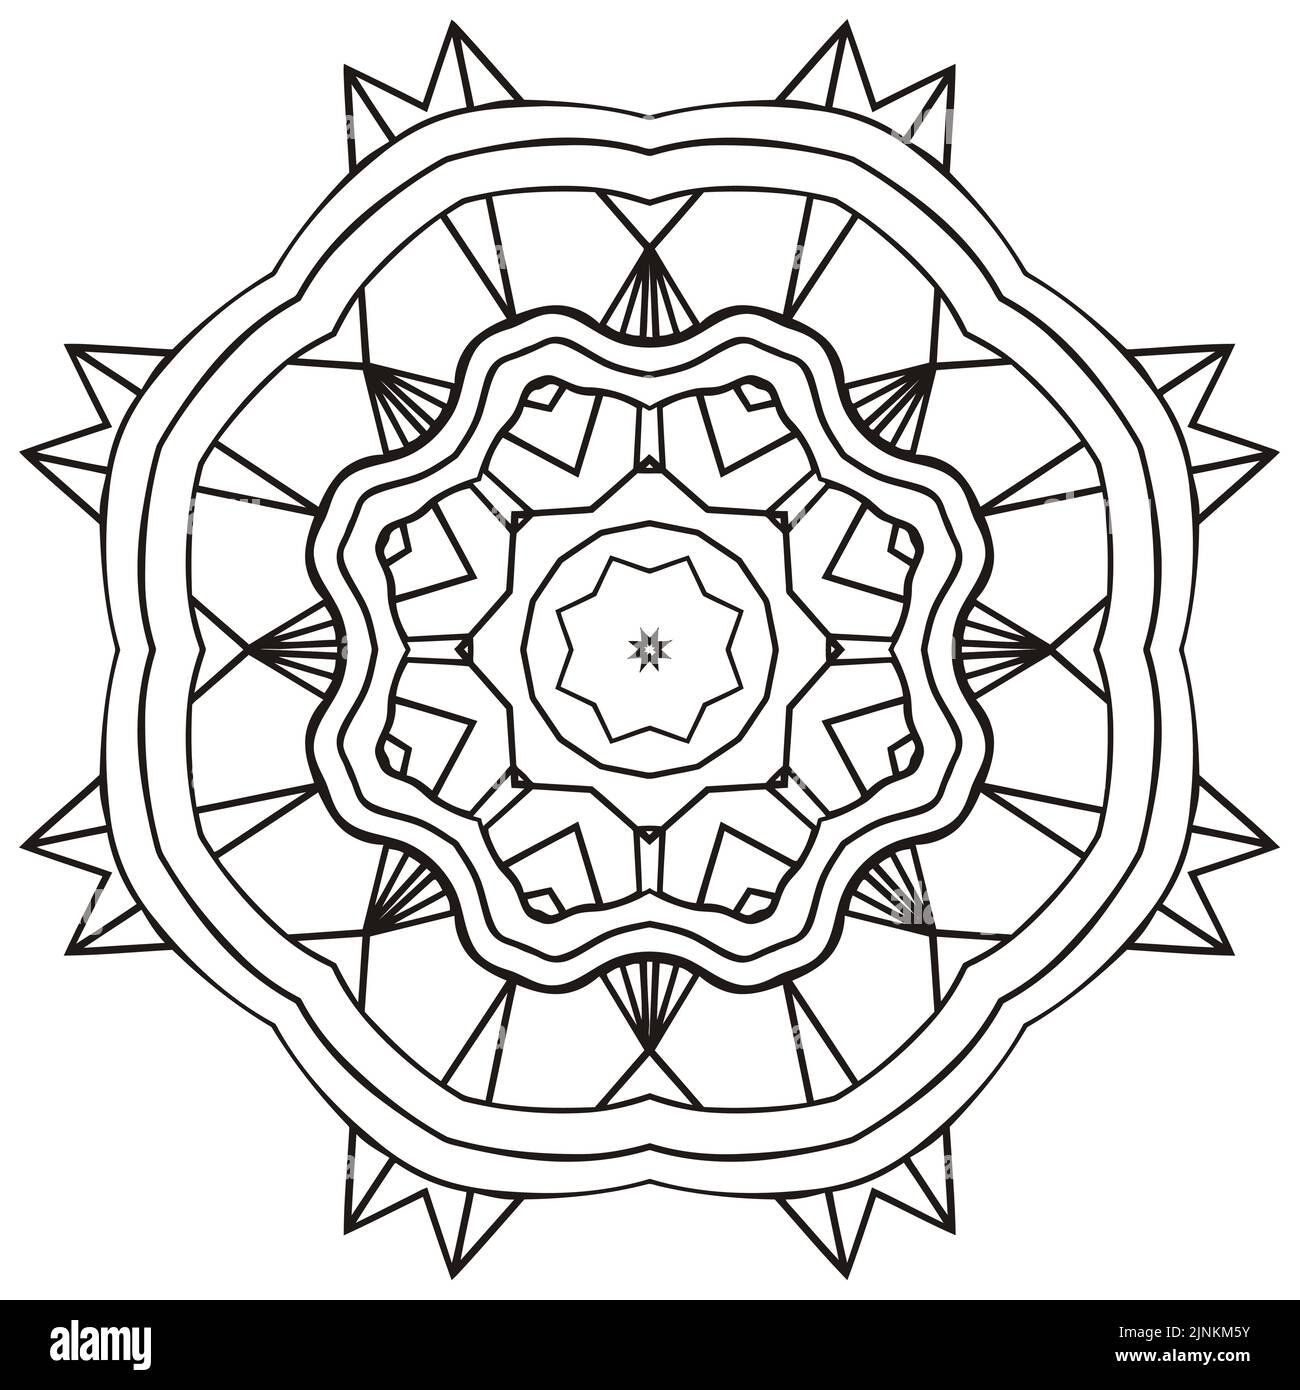 Vector rund Mandala-Logo, ethnische Ornament für Spa, florale Boutique, chinesischen oder indischen Shop, Yoga-Center, vegane Kraft, arabisch orientalisch, Wellness. Stock Vektor